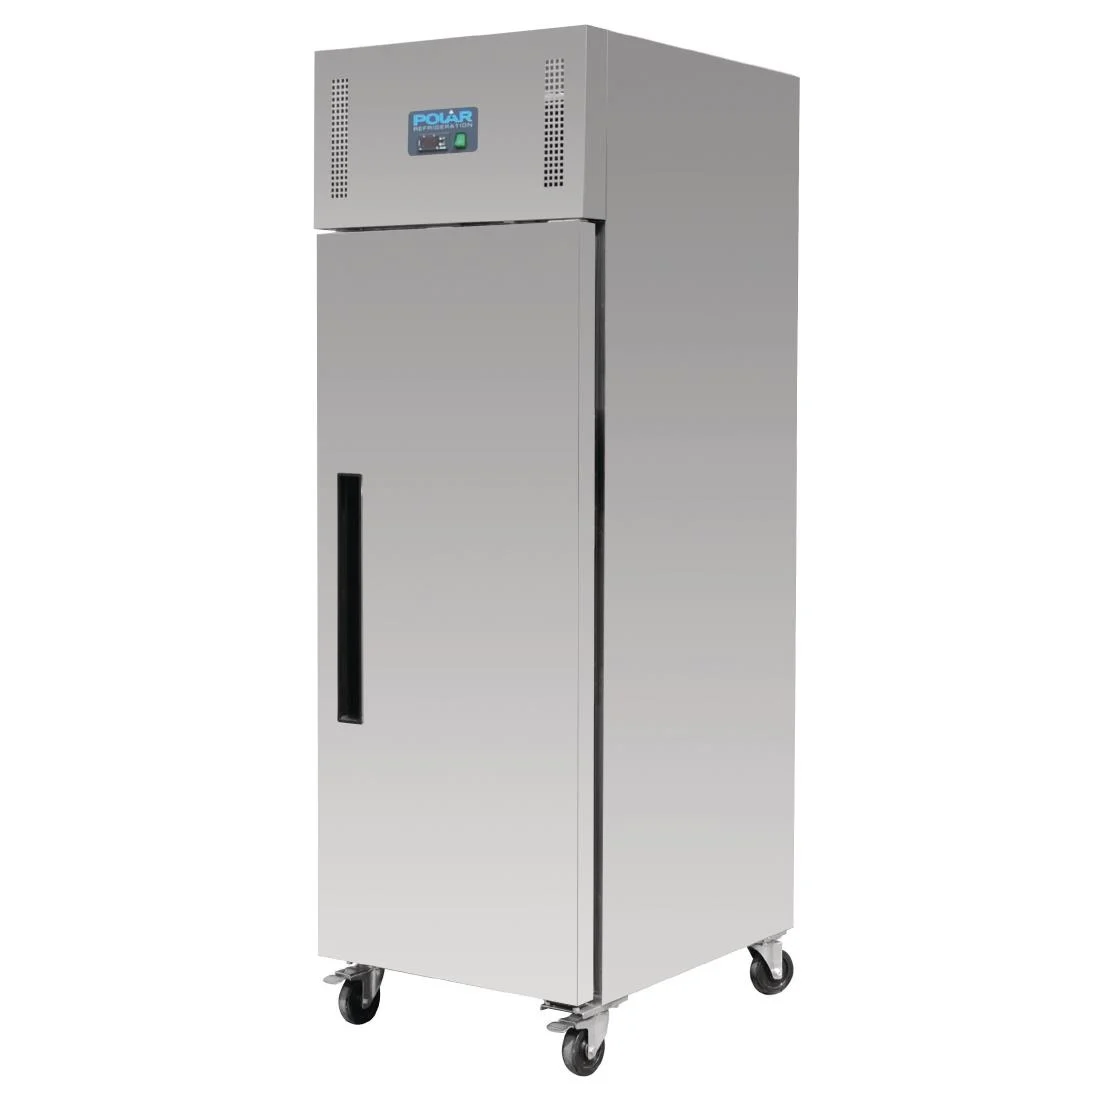 Polar U-Series Single Door Bakery Freezer 850 Litre